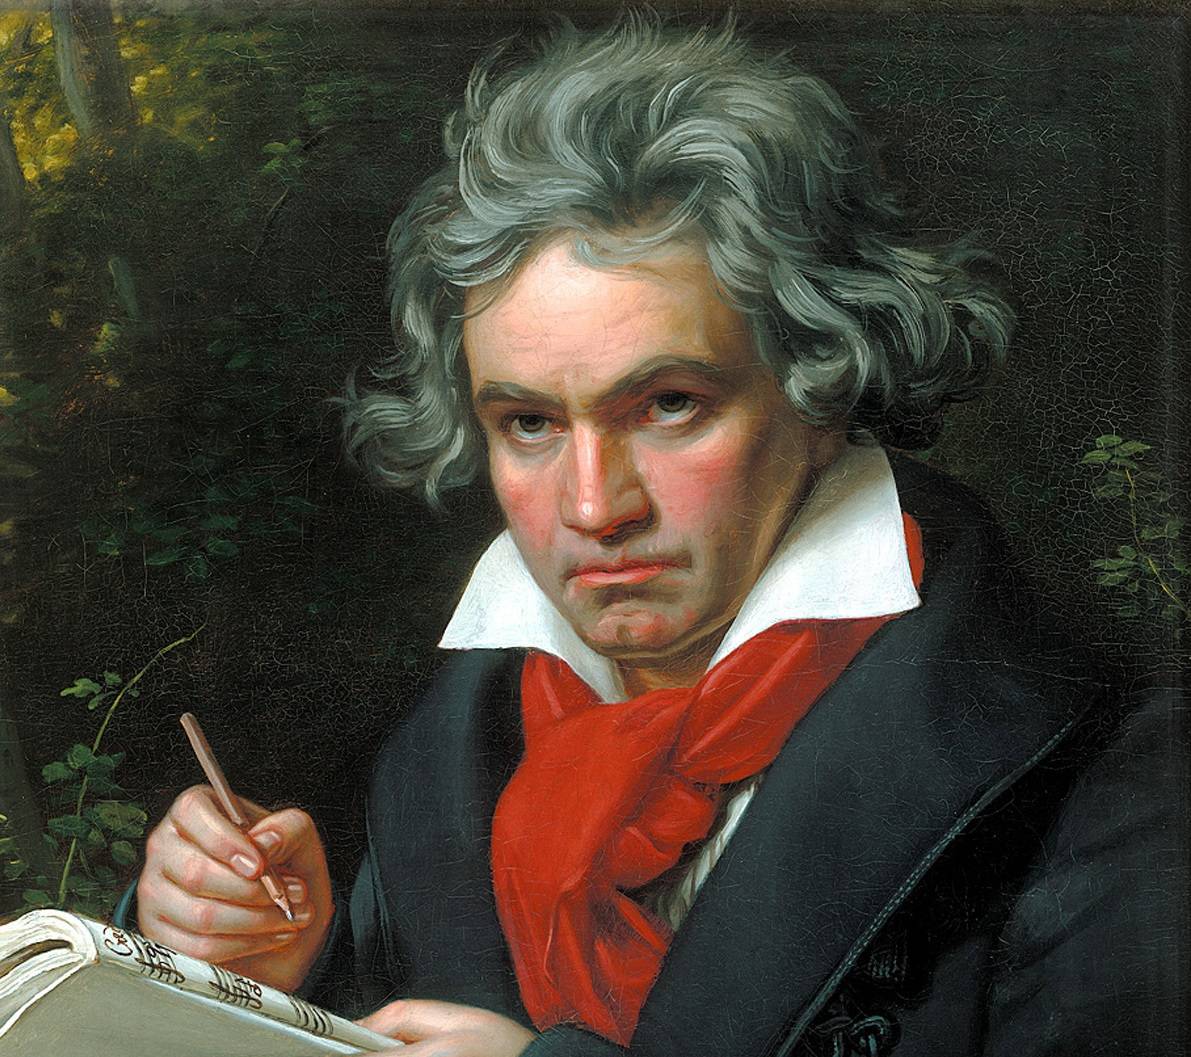 Estudio utiliza ciencia de datos para analizar el misterio del metrónomo de Beethoven (nota de Sinc) julioastillero.com